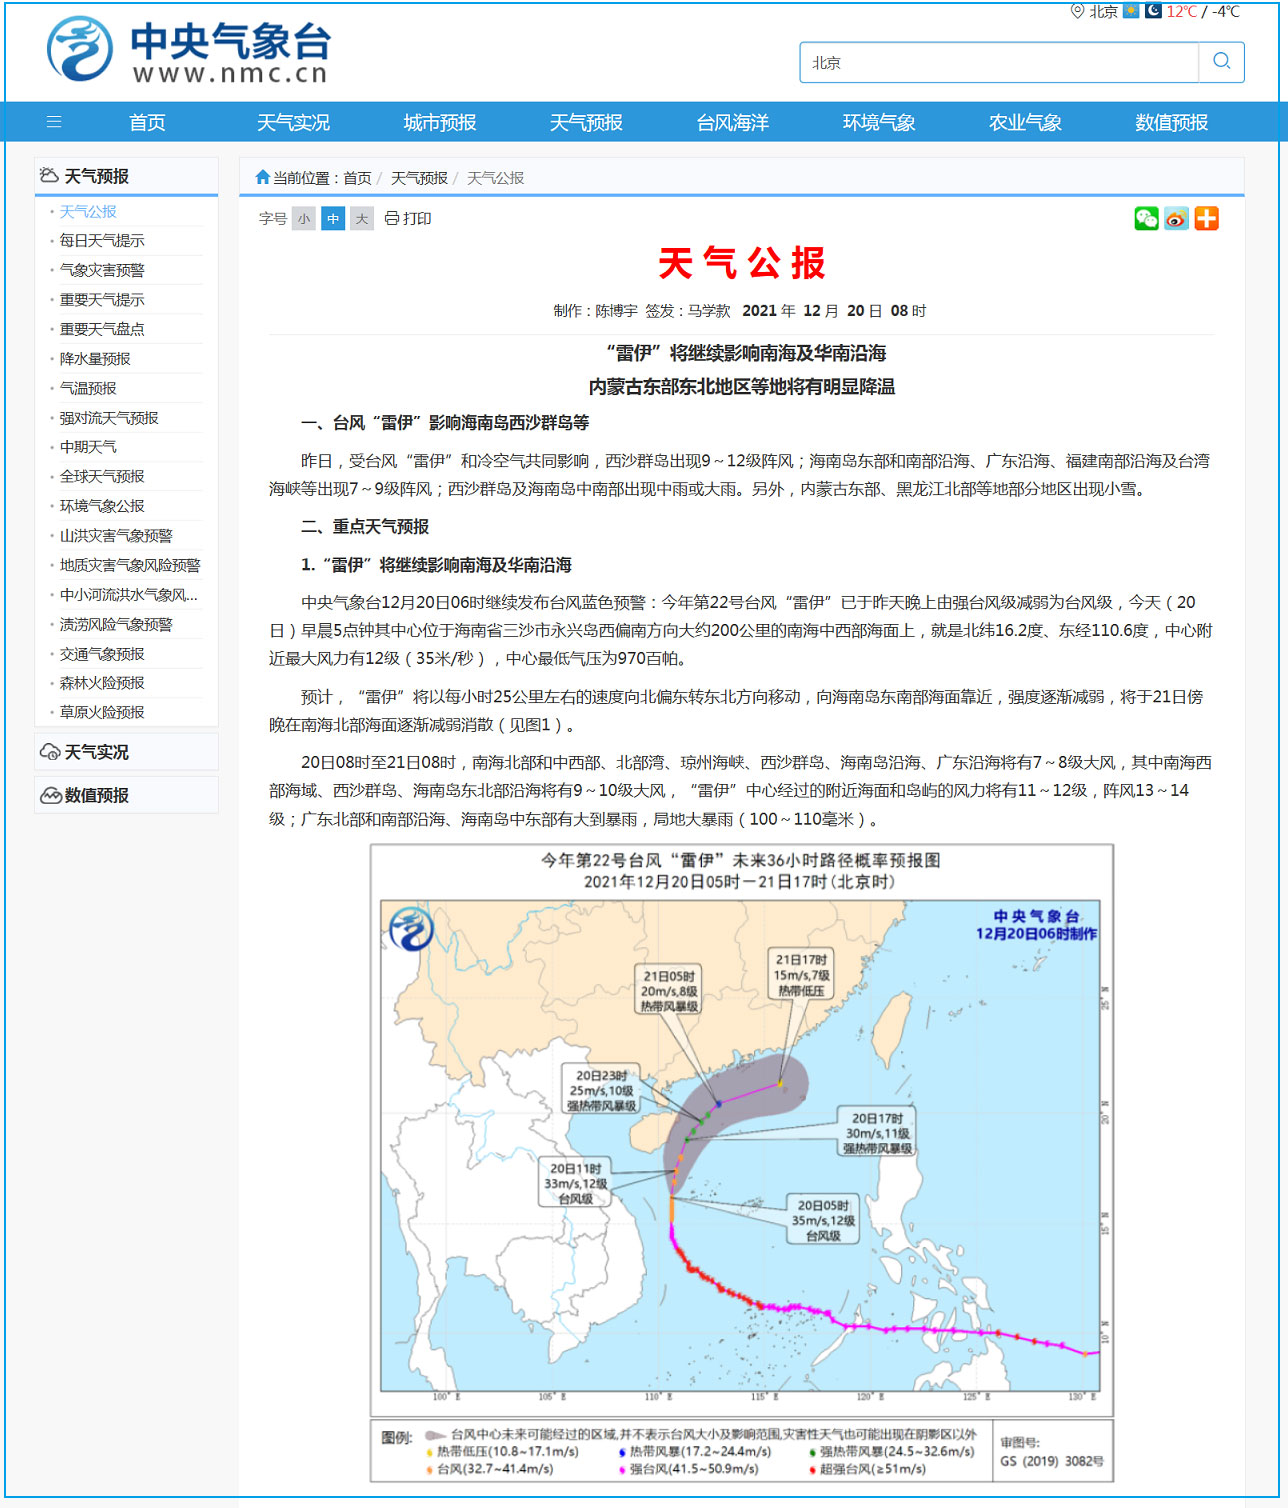 台风“雷伊”继续影响南海及华南沿海 黑龙江北部等地出现小雪